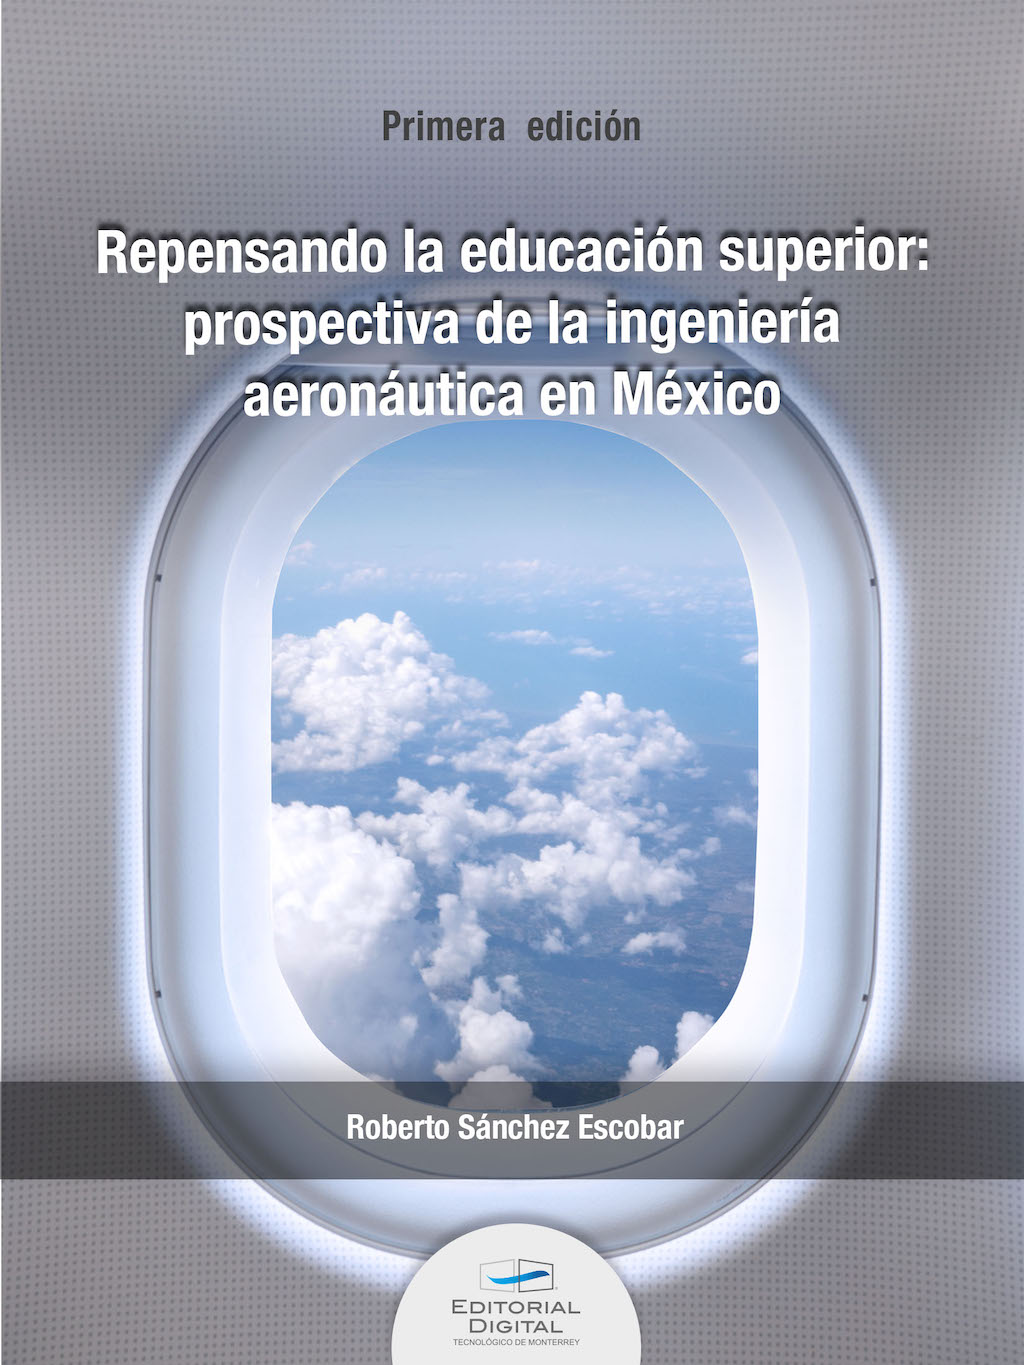 Repensando la educación superior: prospectiva de la ingeniería aeronáutica en México